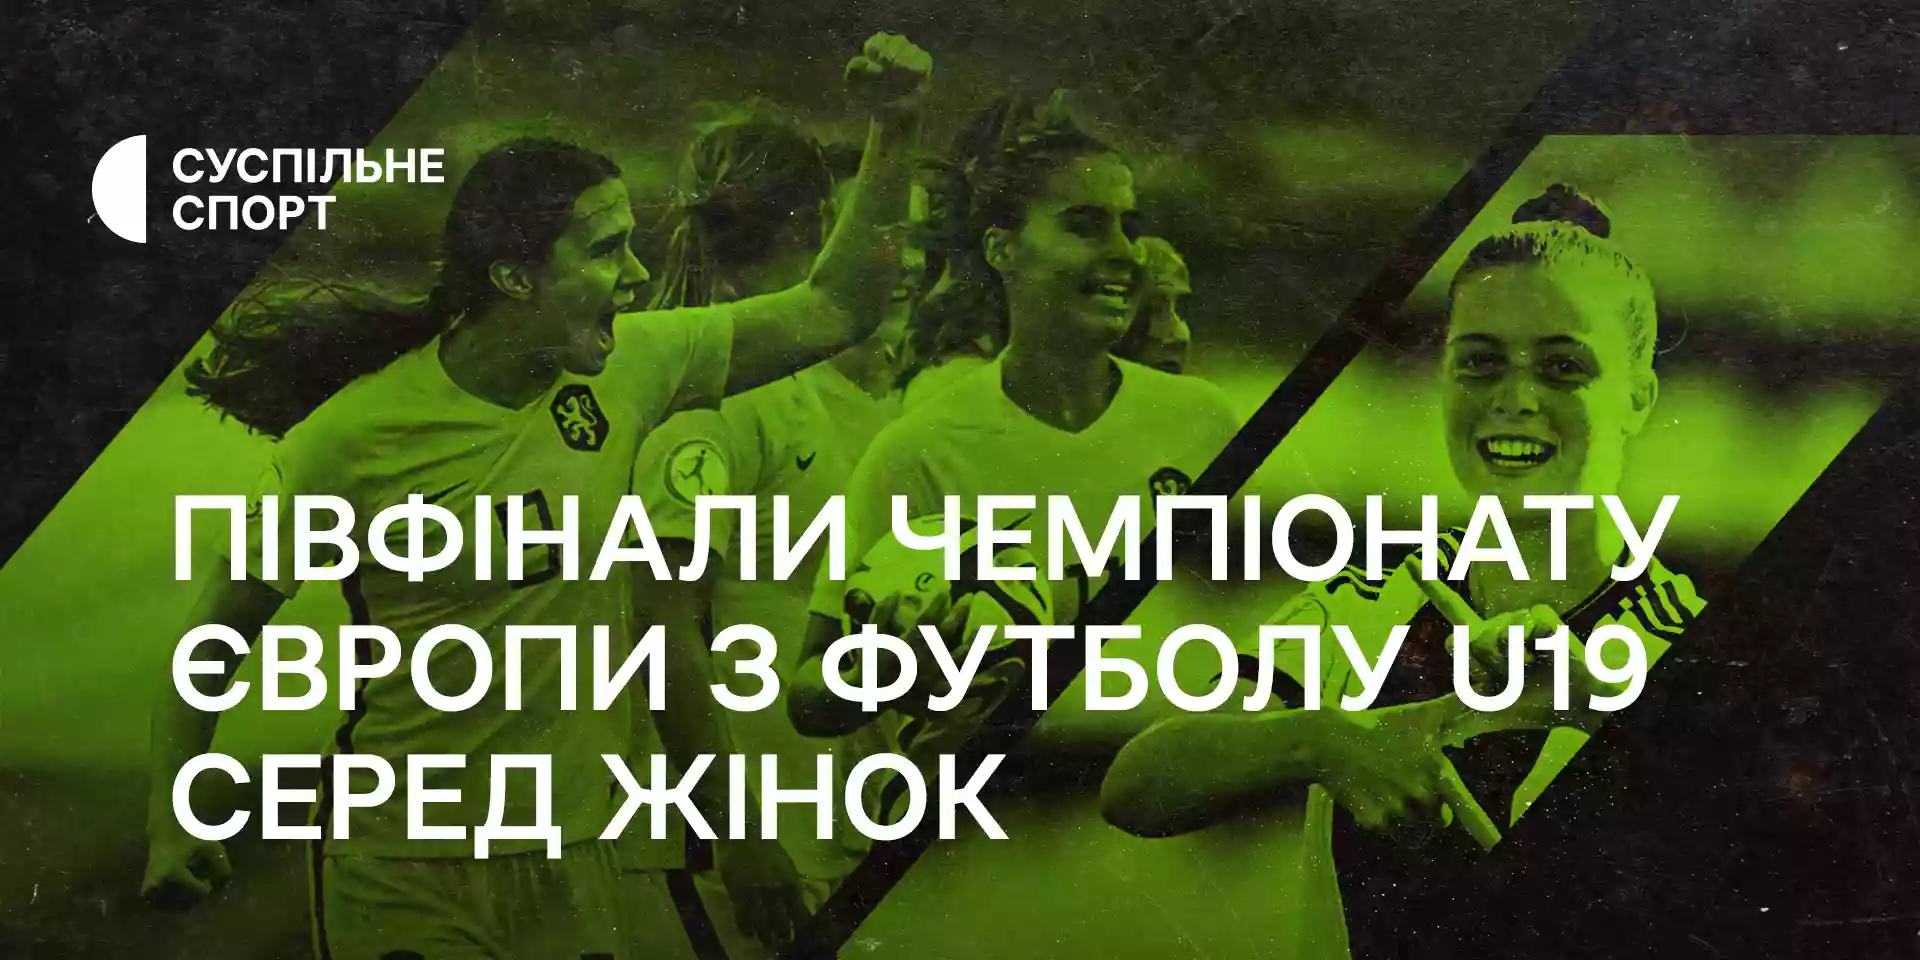 «Суспільне Спорт» транслюватиме півфінали Чемпіонату Європи з футболу U19 серед жінок